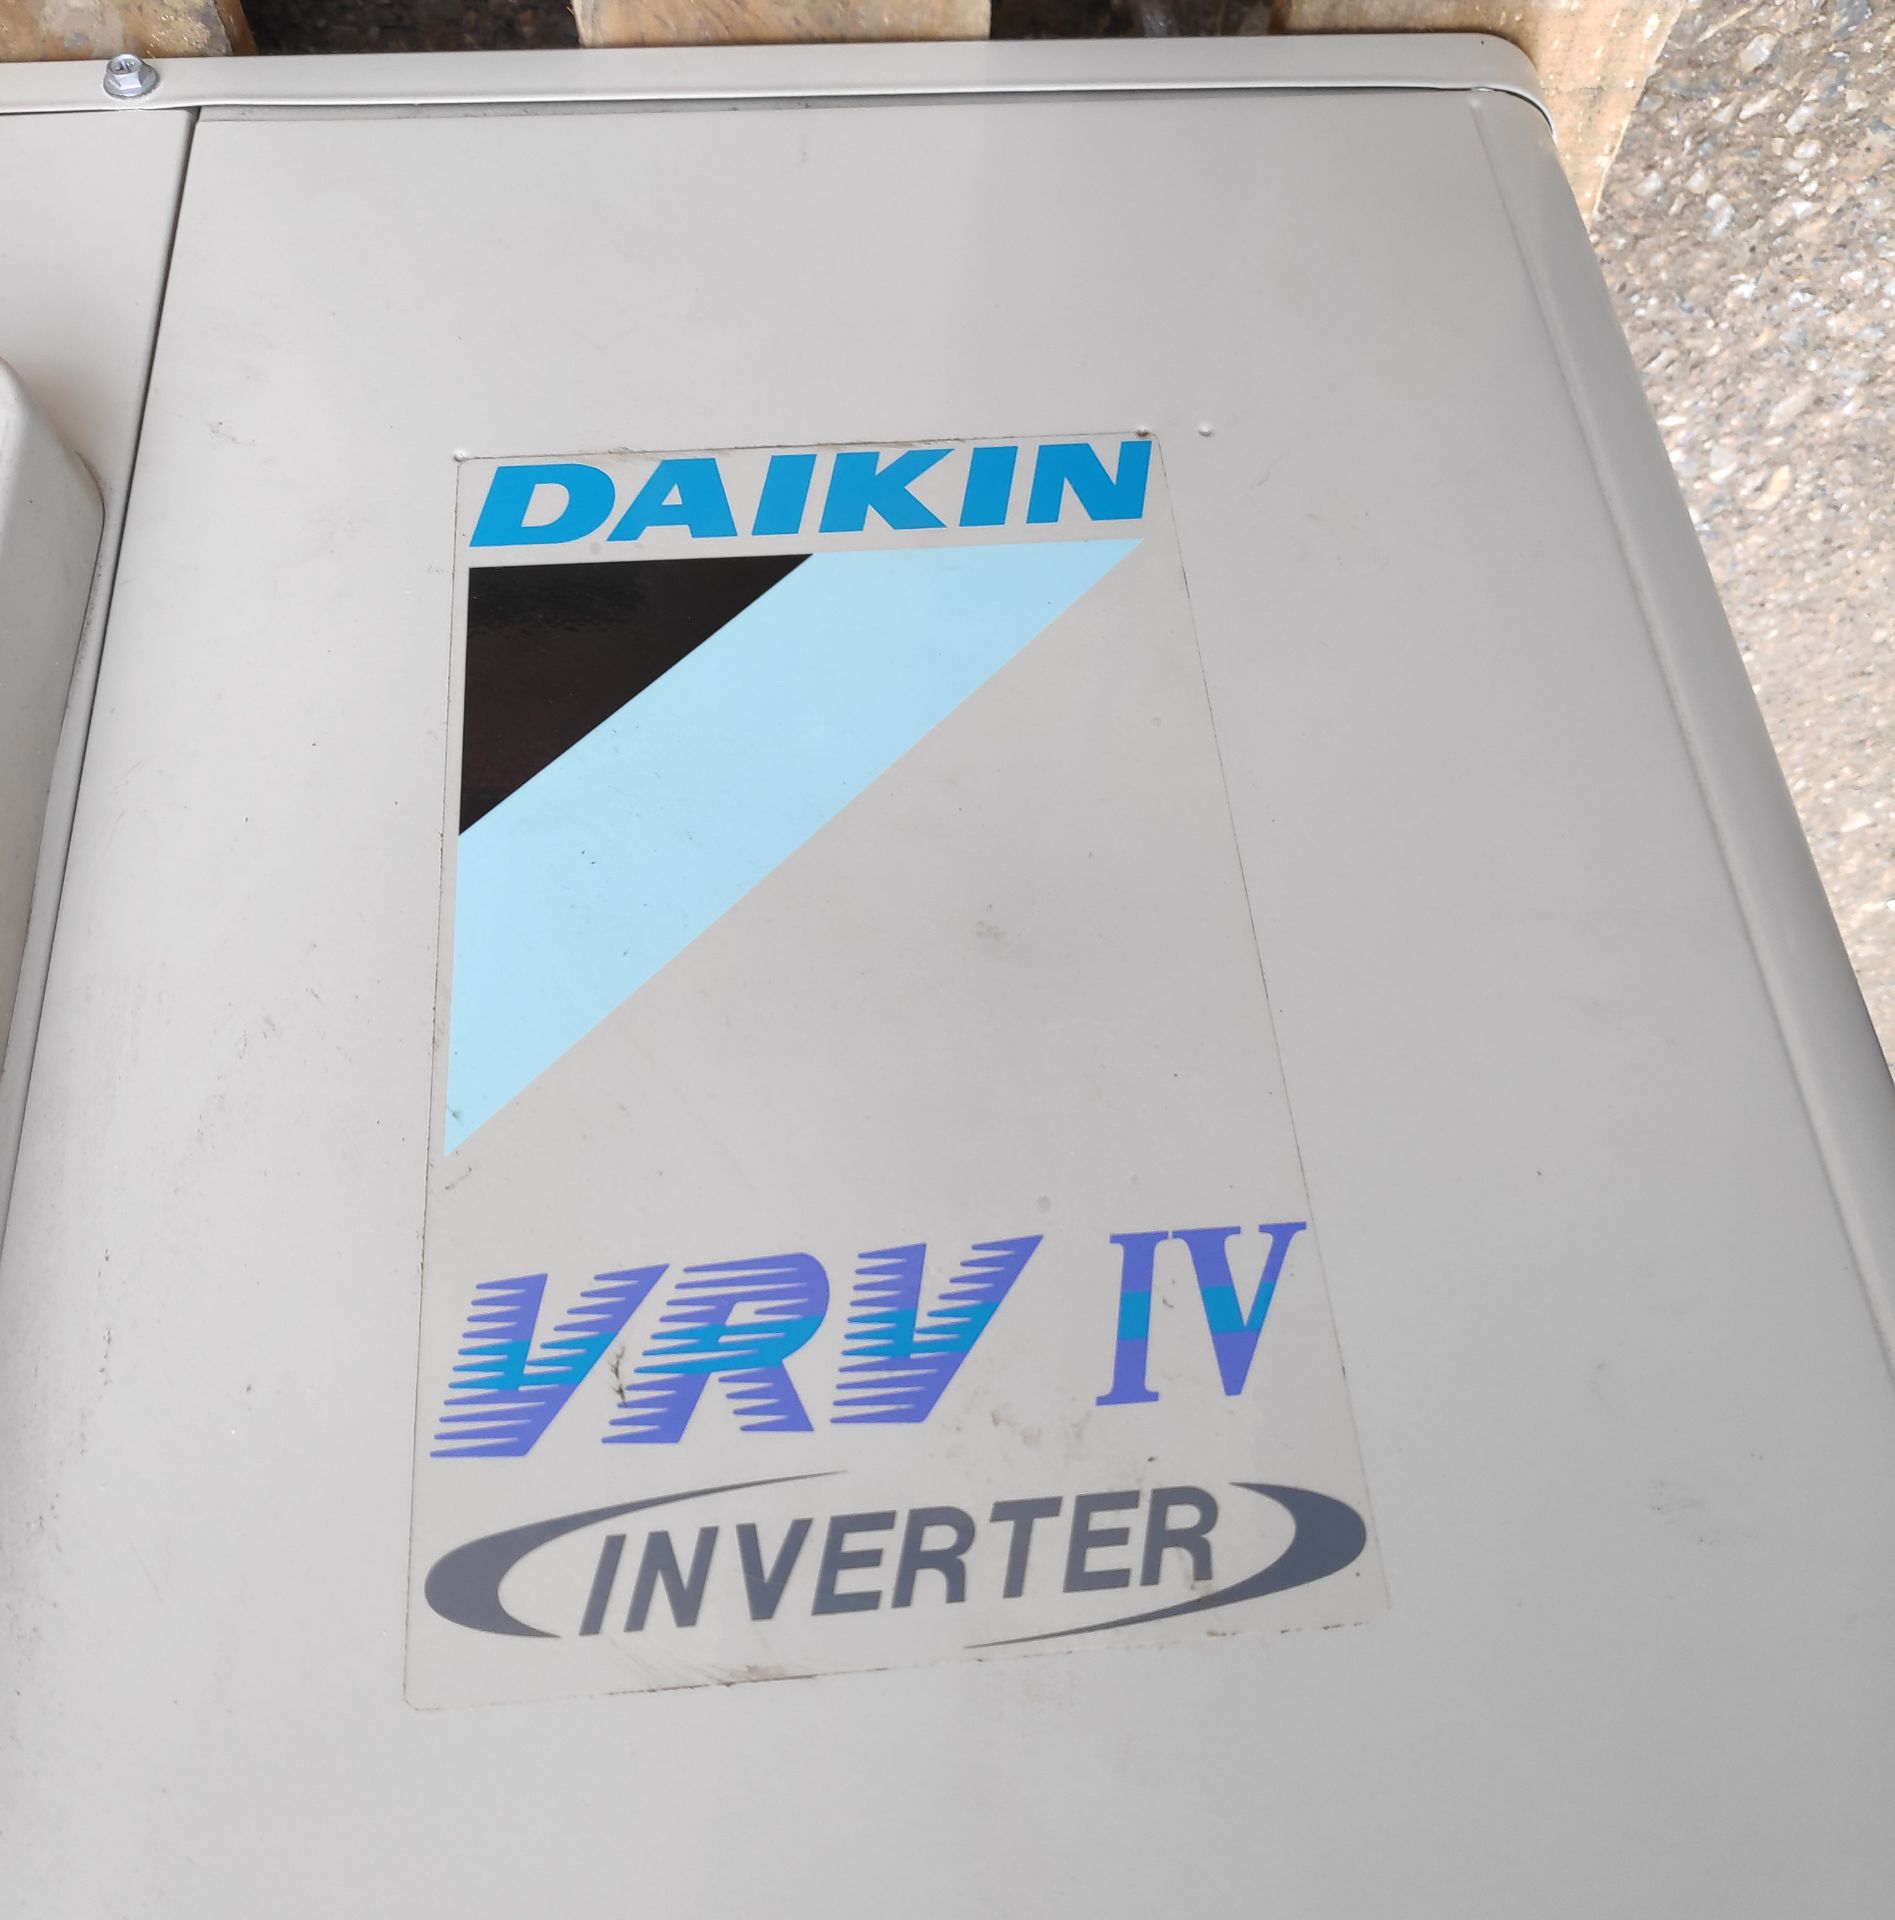 2 x Daikin VRV IV S-Series Air Conditioner Inverter Heat Pumps - Model: RXYSQ5T7V1B - JMCS114 - - Image 7 of 10